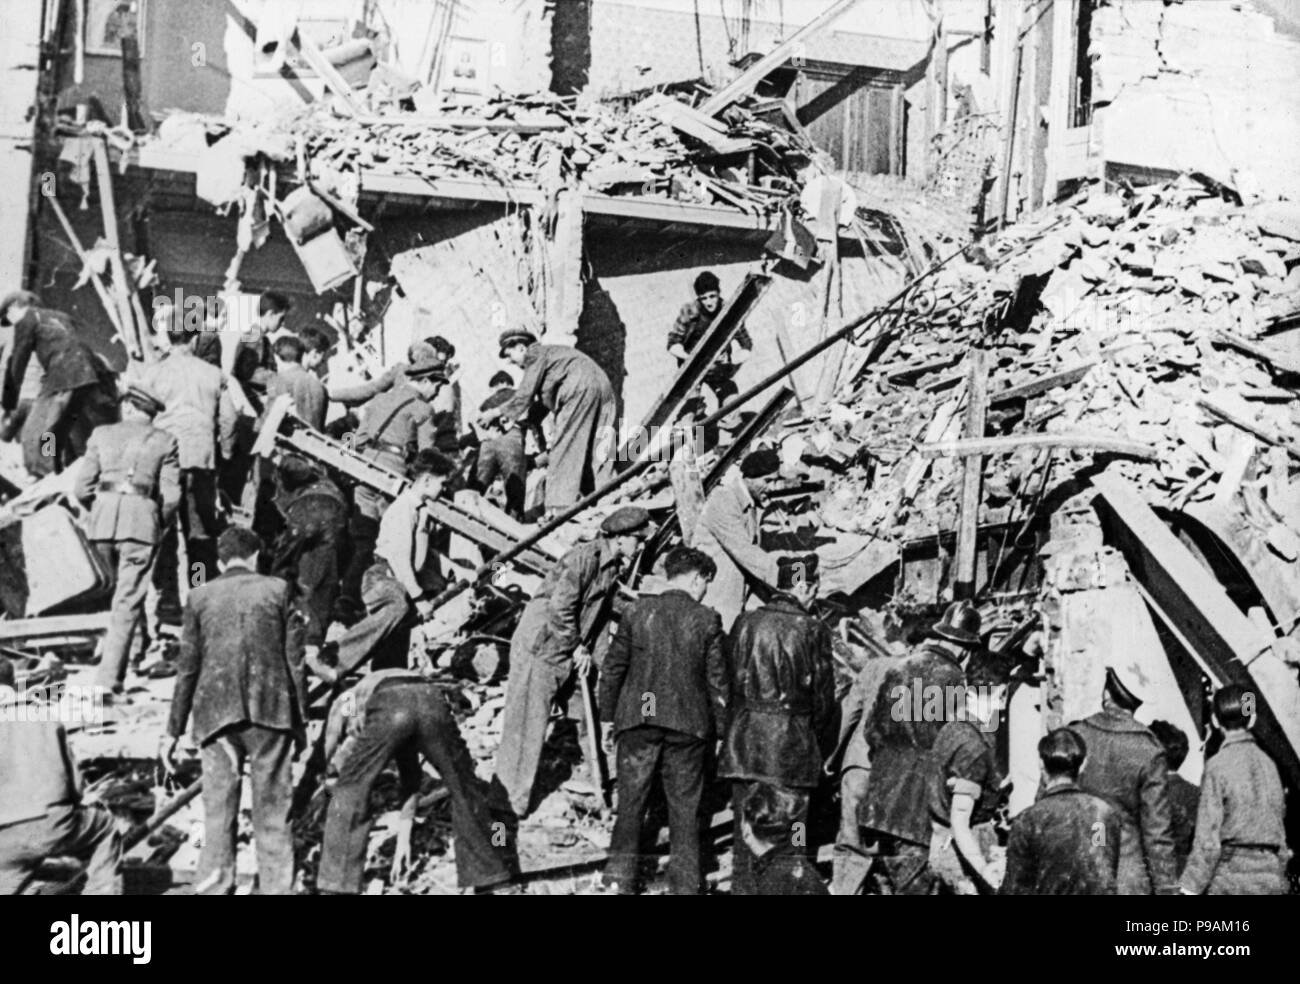 Les gens à la recherche à travers les bâtiments en Espagne, endommagé par les bombardements en 1937. L'Espagne a été bombardé par la Luftwaffe allemande et à la fois l'Armée de l'air italienne durant ce temps. Banque D'Images